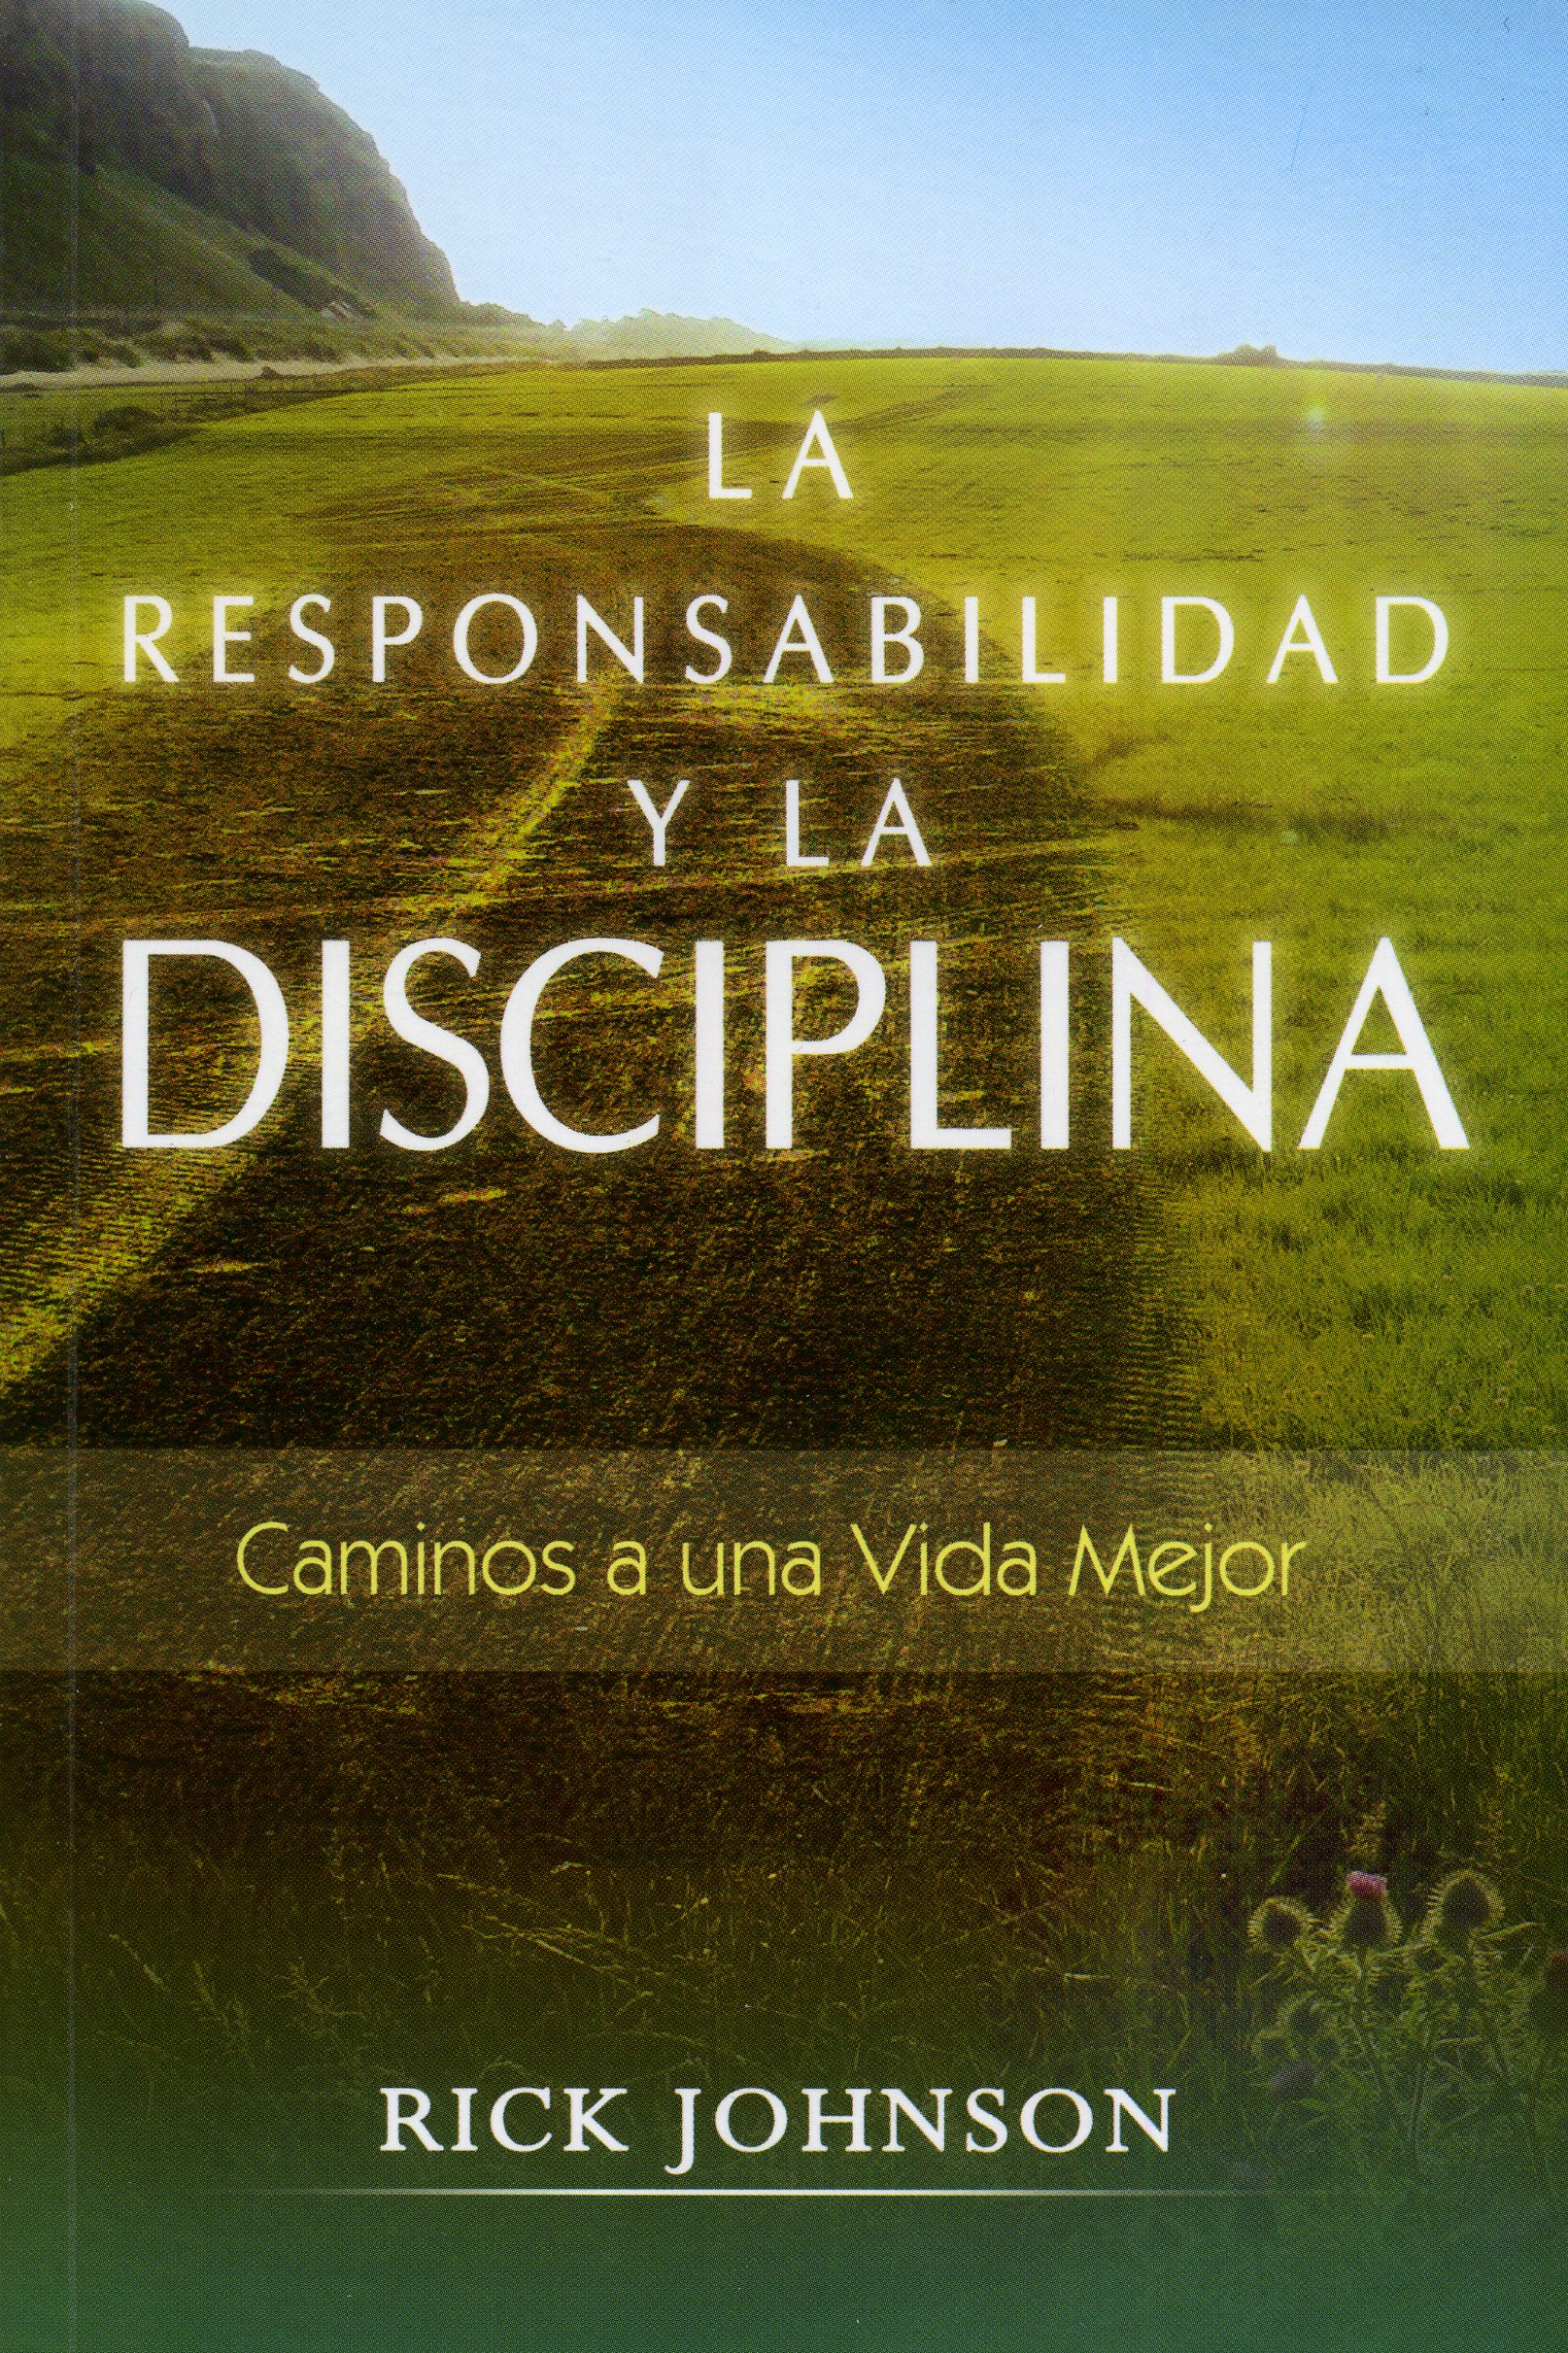 La Responsabilidad y la Disciplina